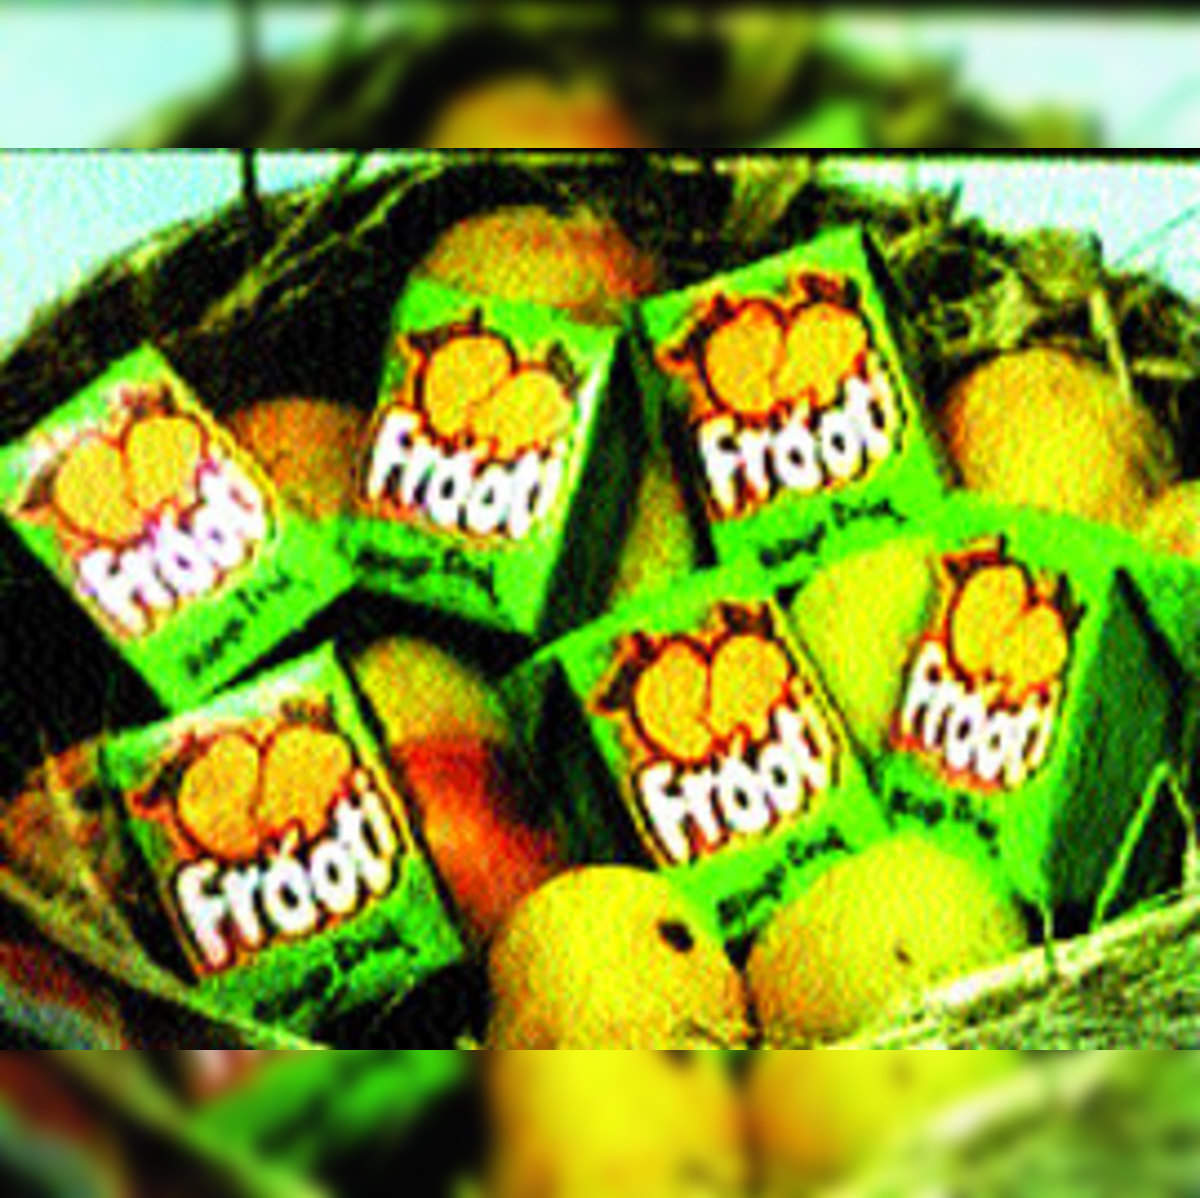 Buy Frooti Drink Fresh N Juicy Mango 12 L Bottle Online at the Best Price  of Rs 70 - bigbasket